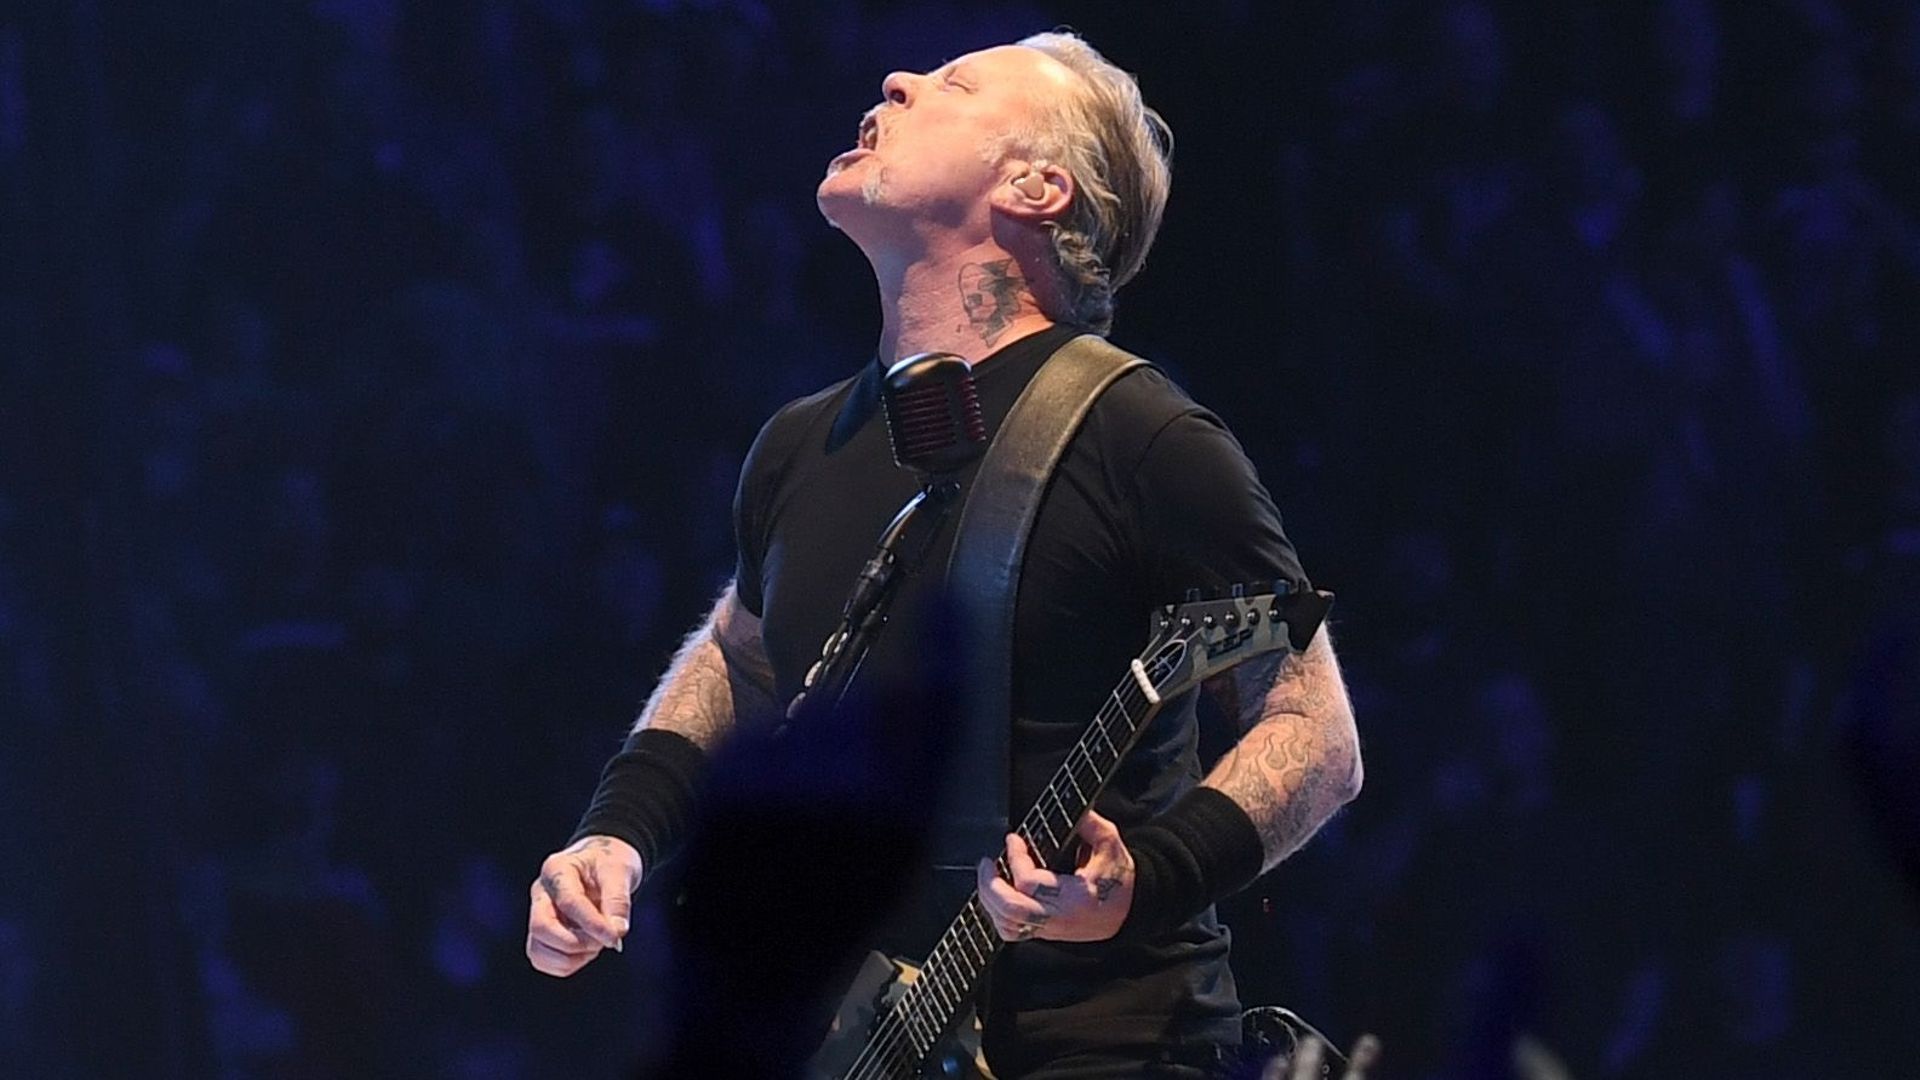 James Hetfield joue pour la première fois depuis sa cure de désintox